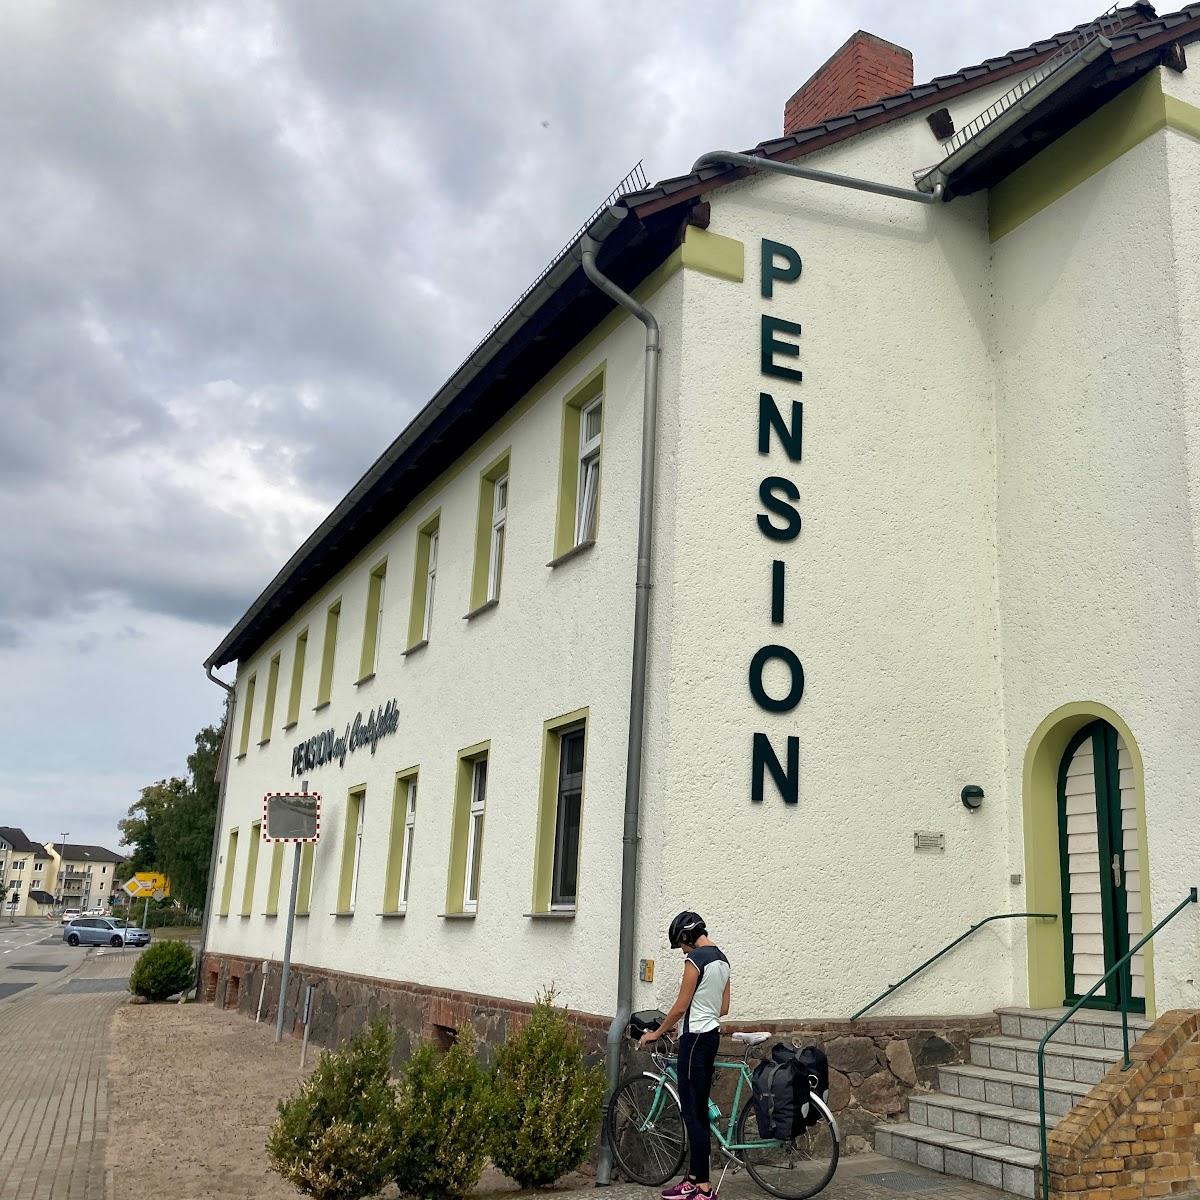 Restaurant "Pension auf Carlsfelde" in Torgelow